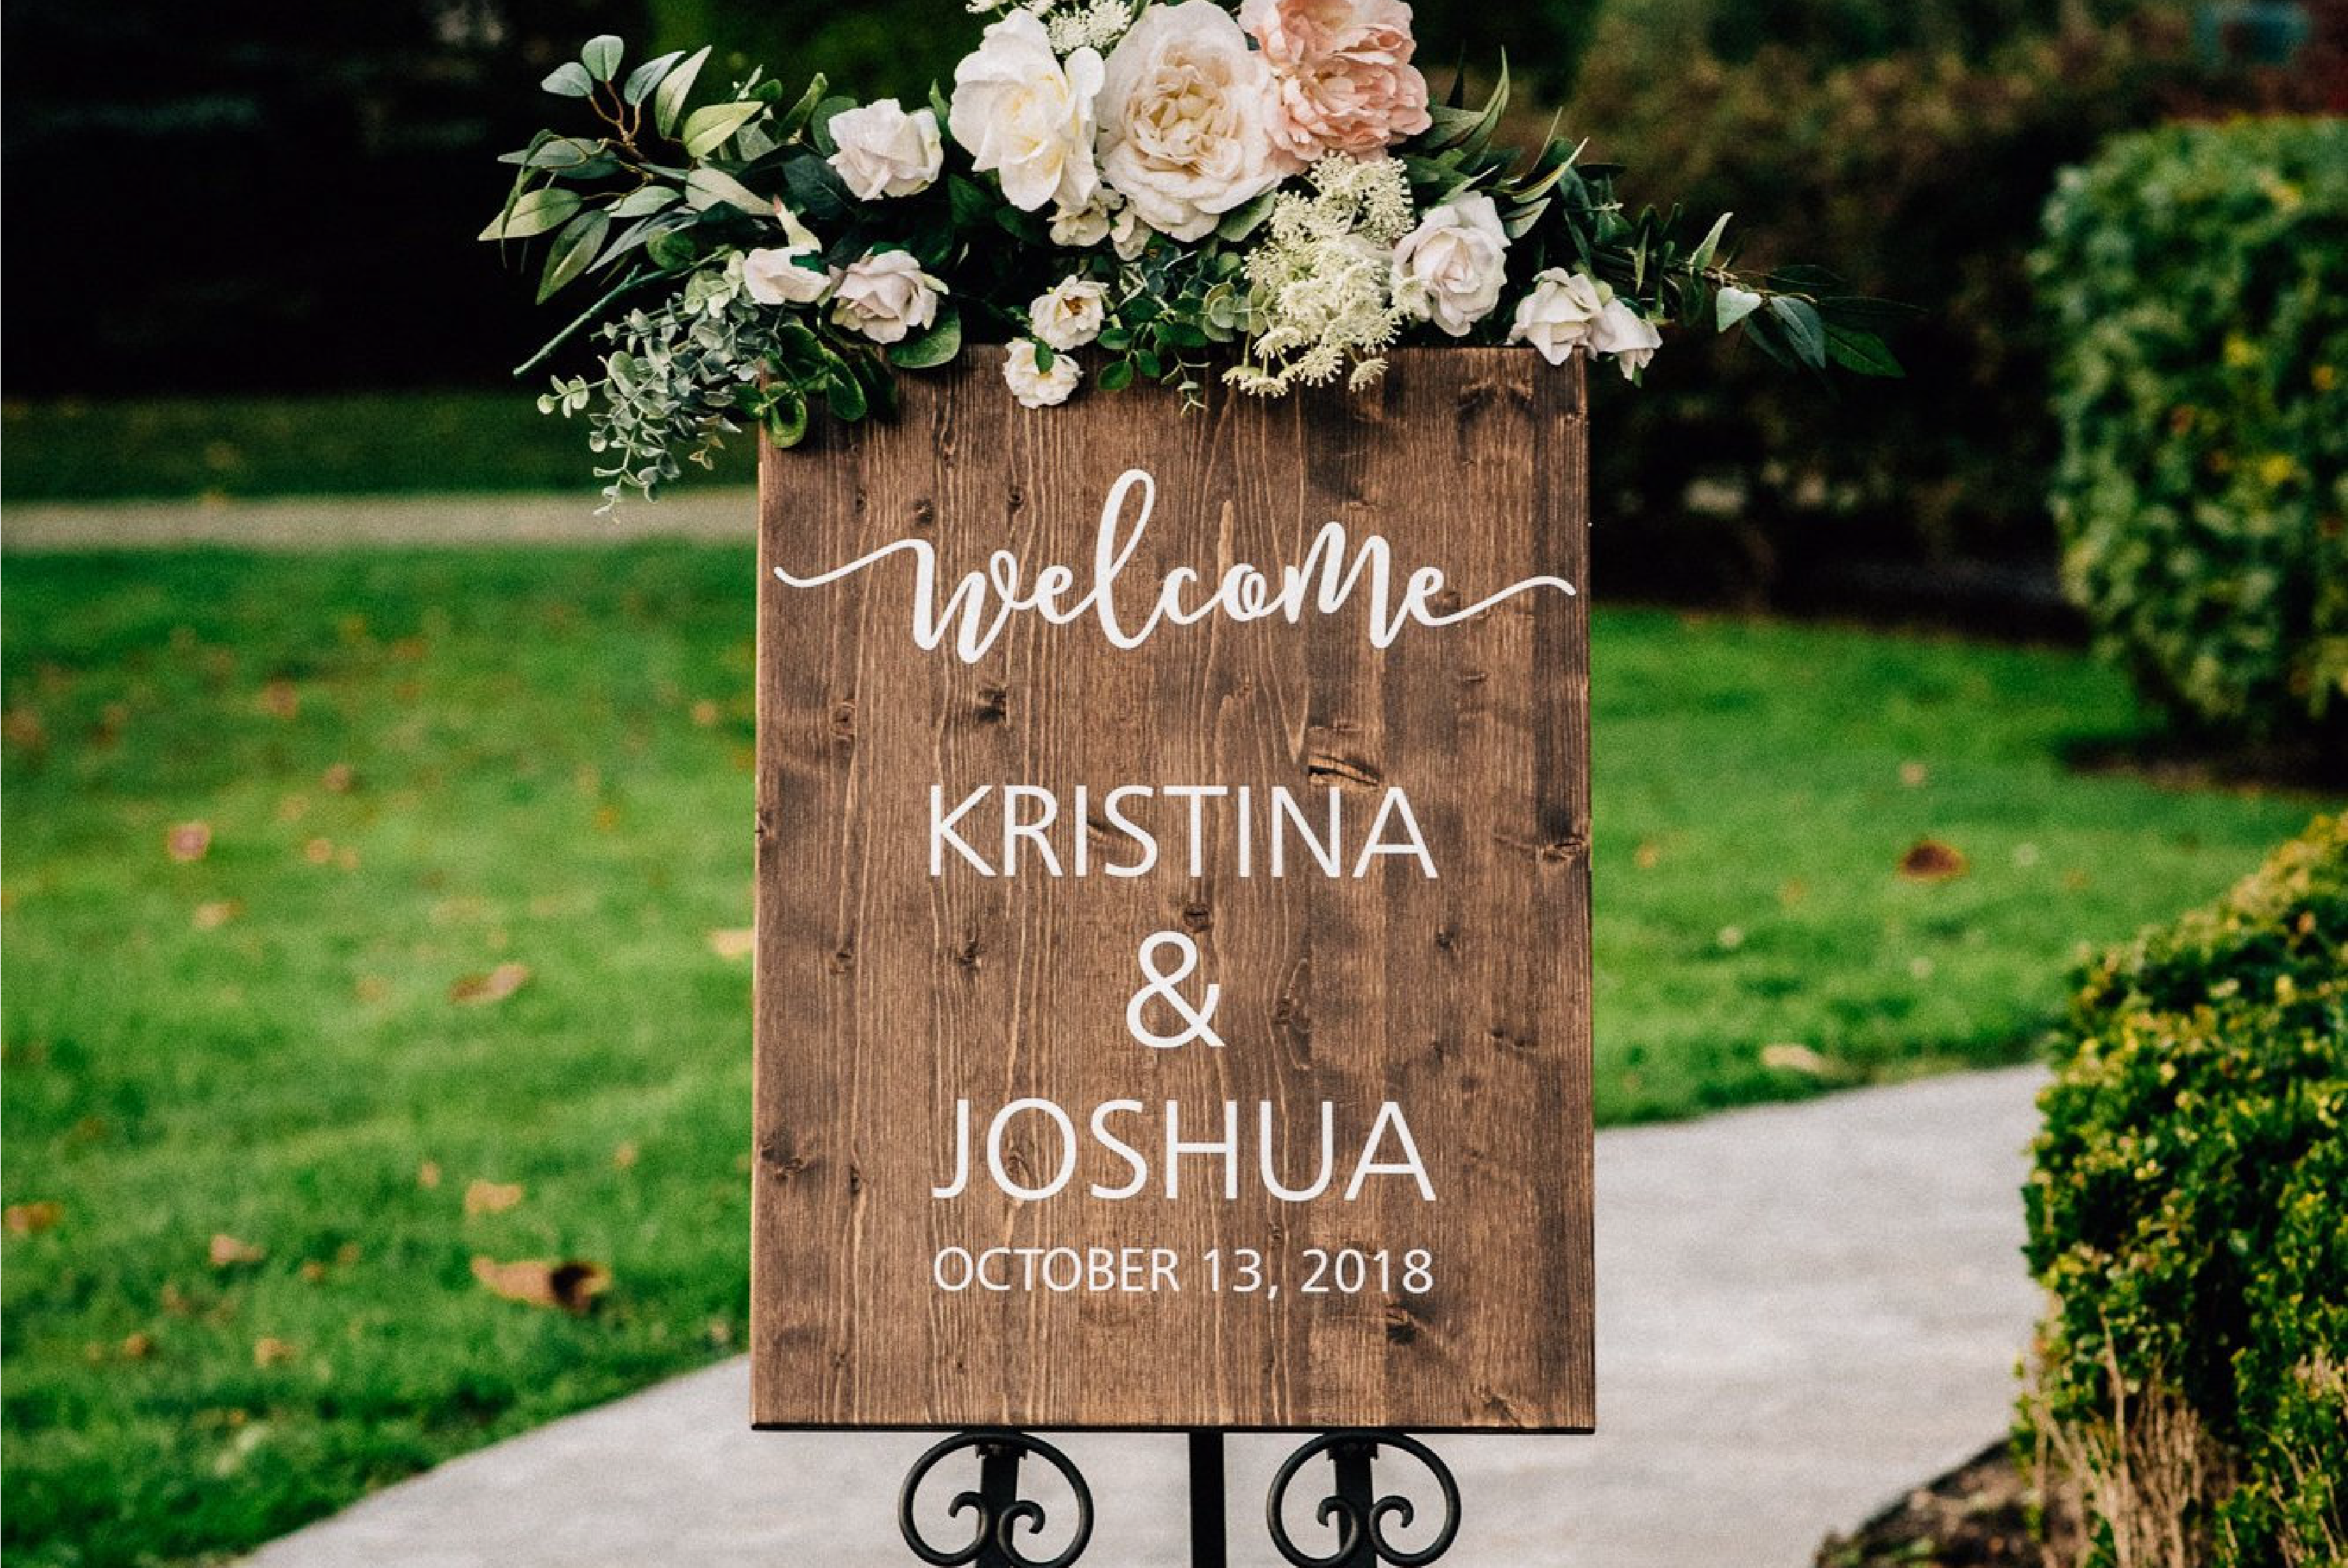 Wedding Welcome Sign – ApkBridal